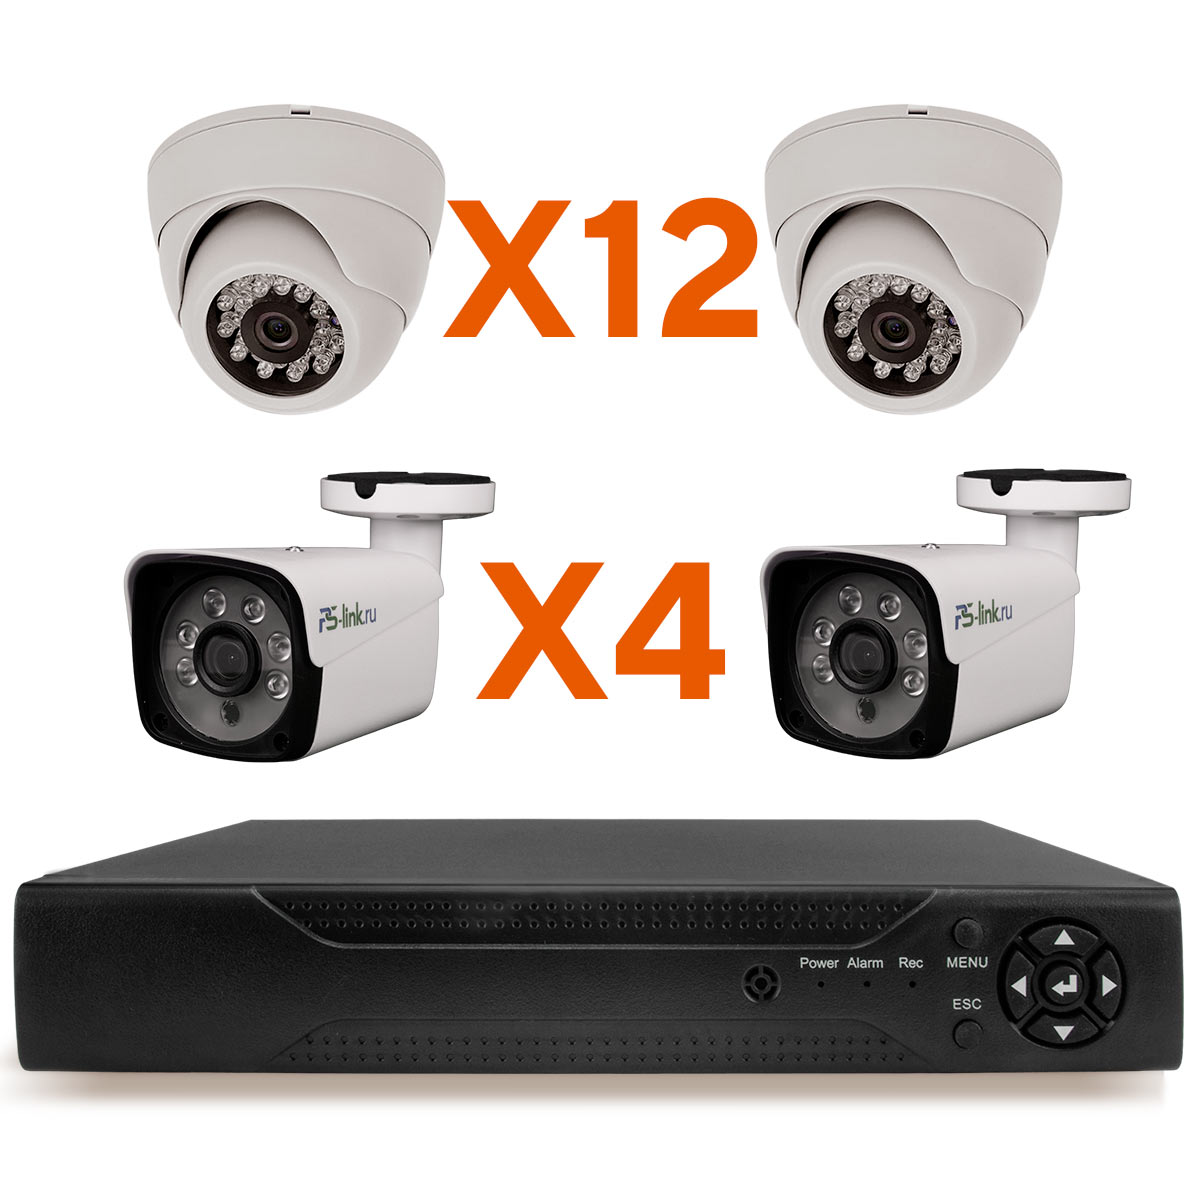 Комплект видеонаблюдения AHD Ps-Link KIT-B2124HD 16 камер 2Мп внутренние и уличные комплект видеонаблюдения ahd ps link kit c209hd 9 уличных 2мп камер